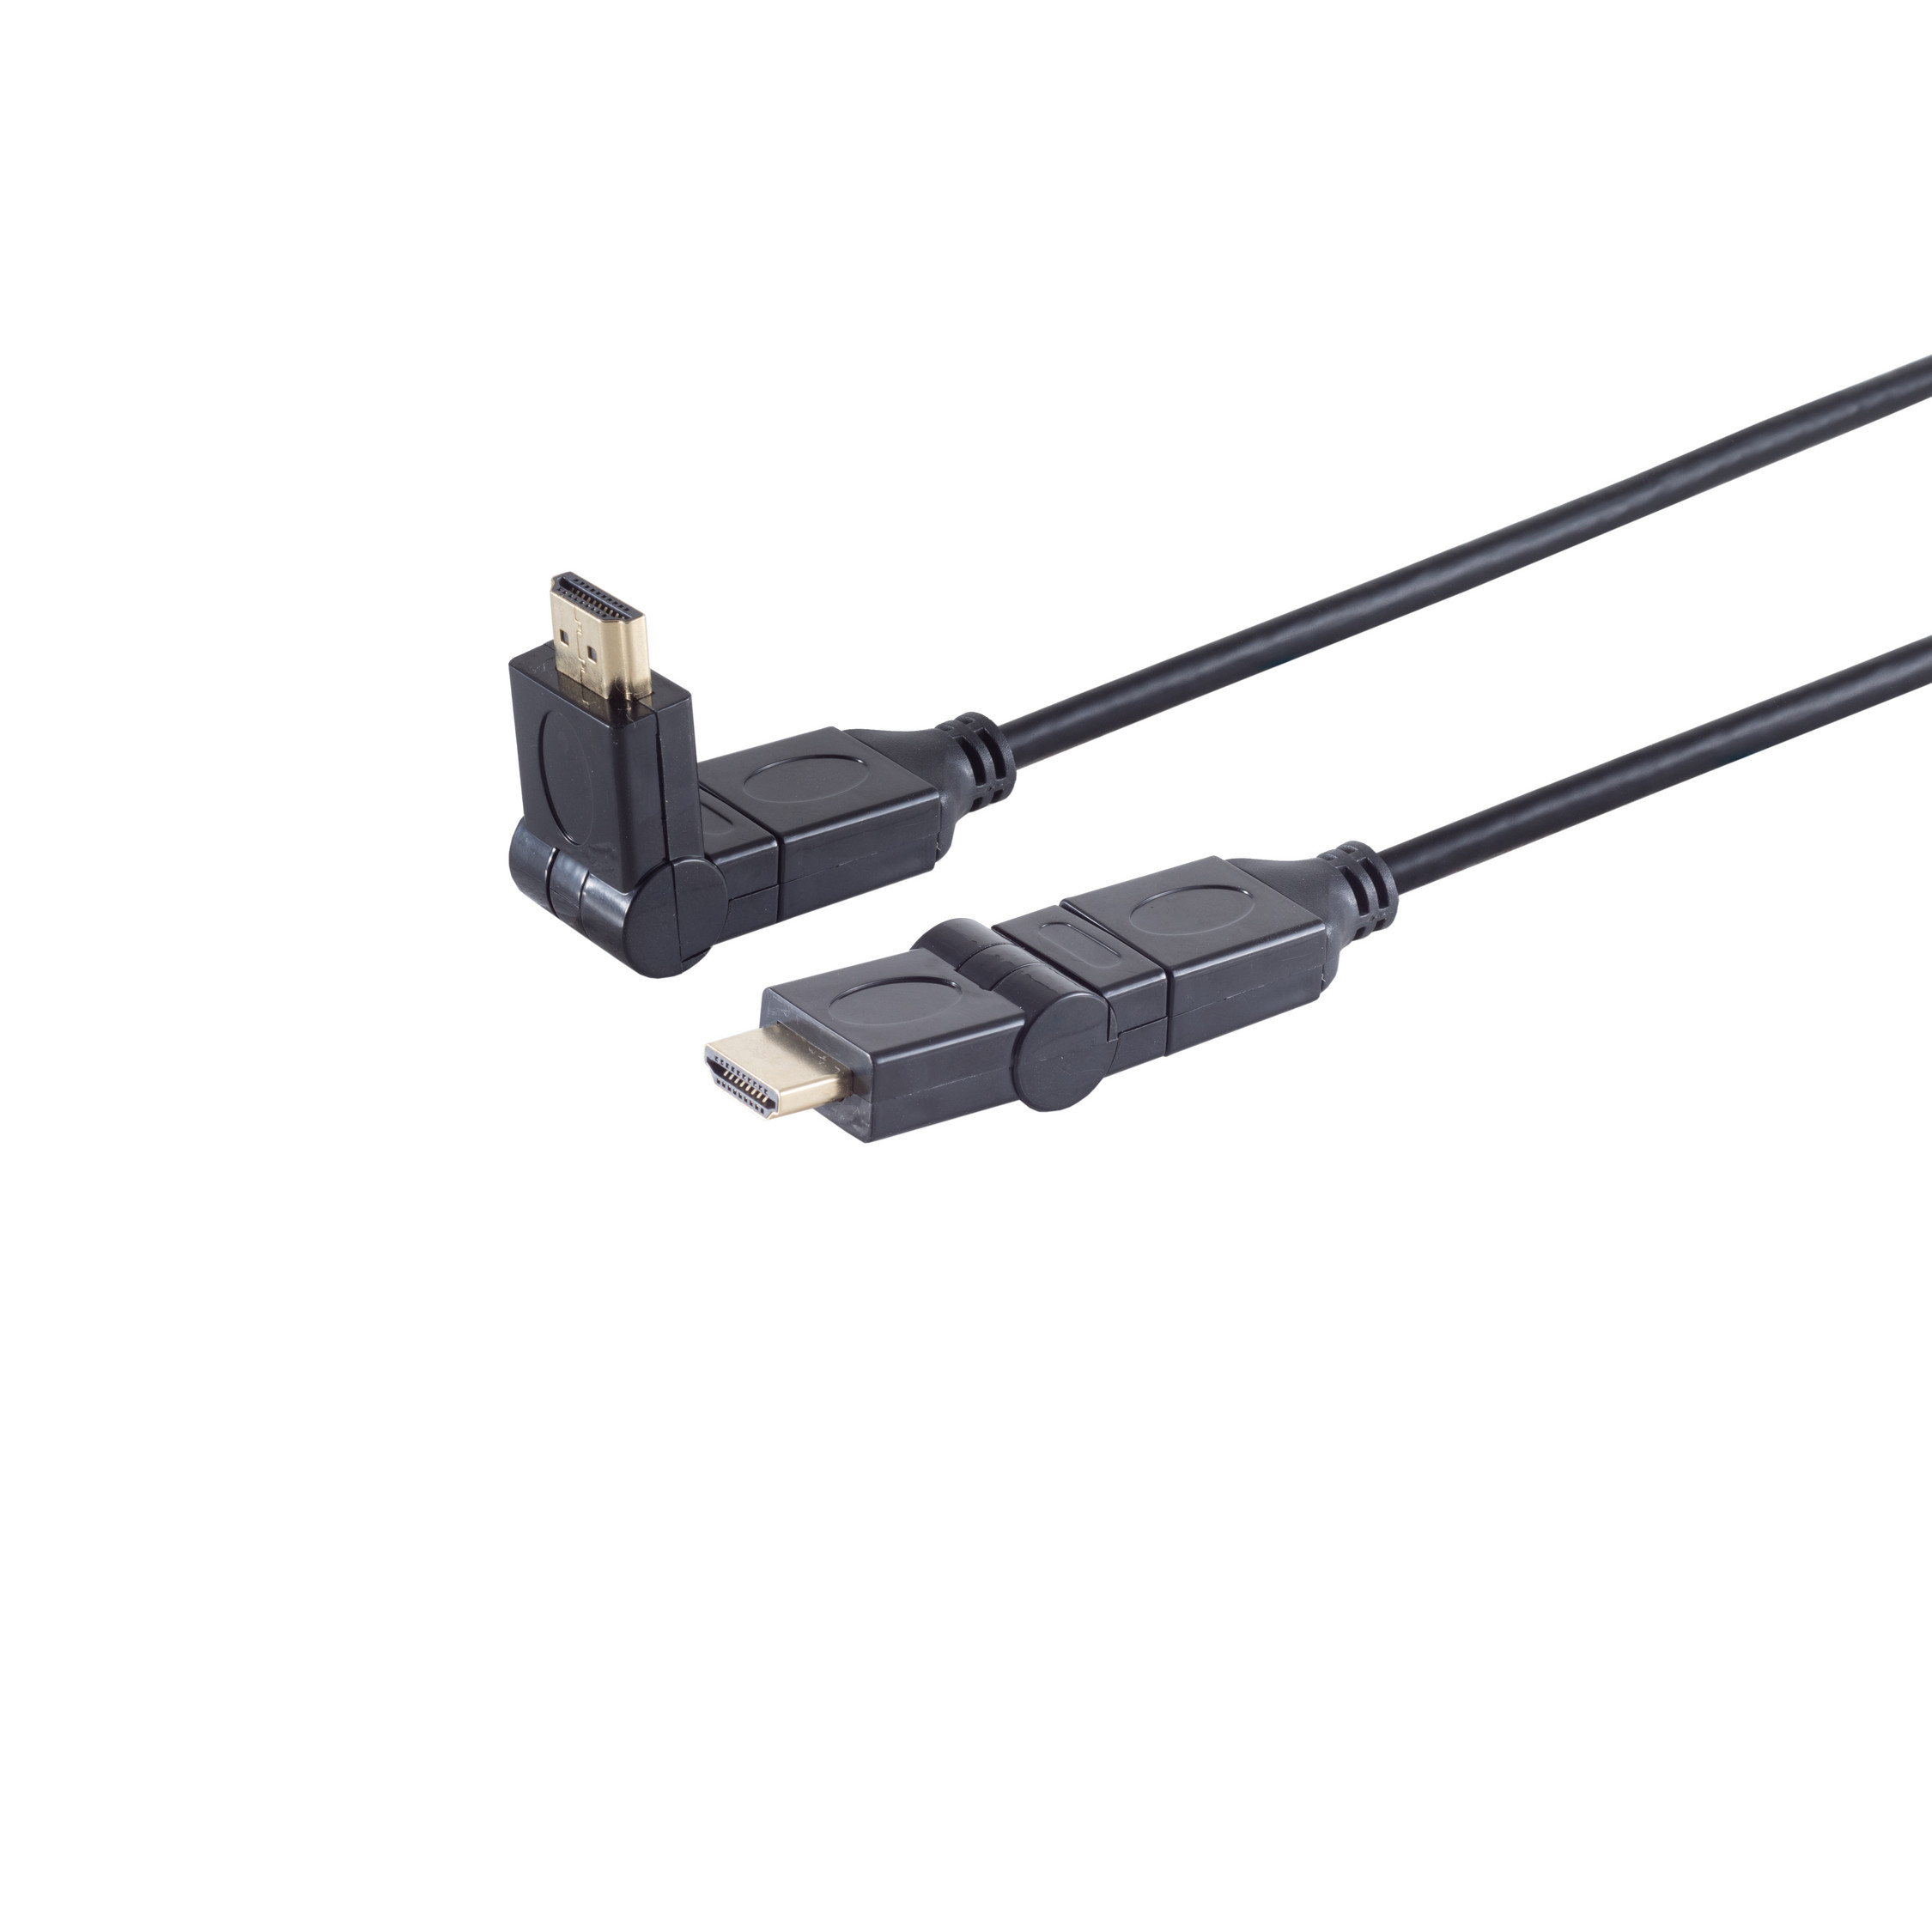 A-Stecker A-Stecker/HDMI Kabel winkelbar 3m HEAC S/CONN HDMI CONNECTIVITY HDMI MAXIMUM